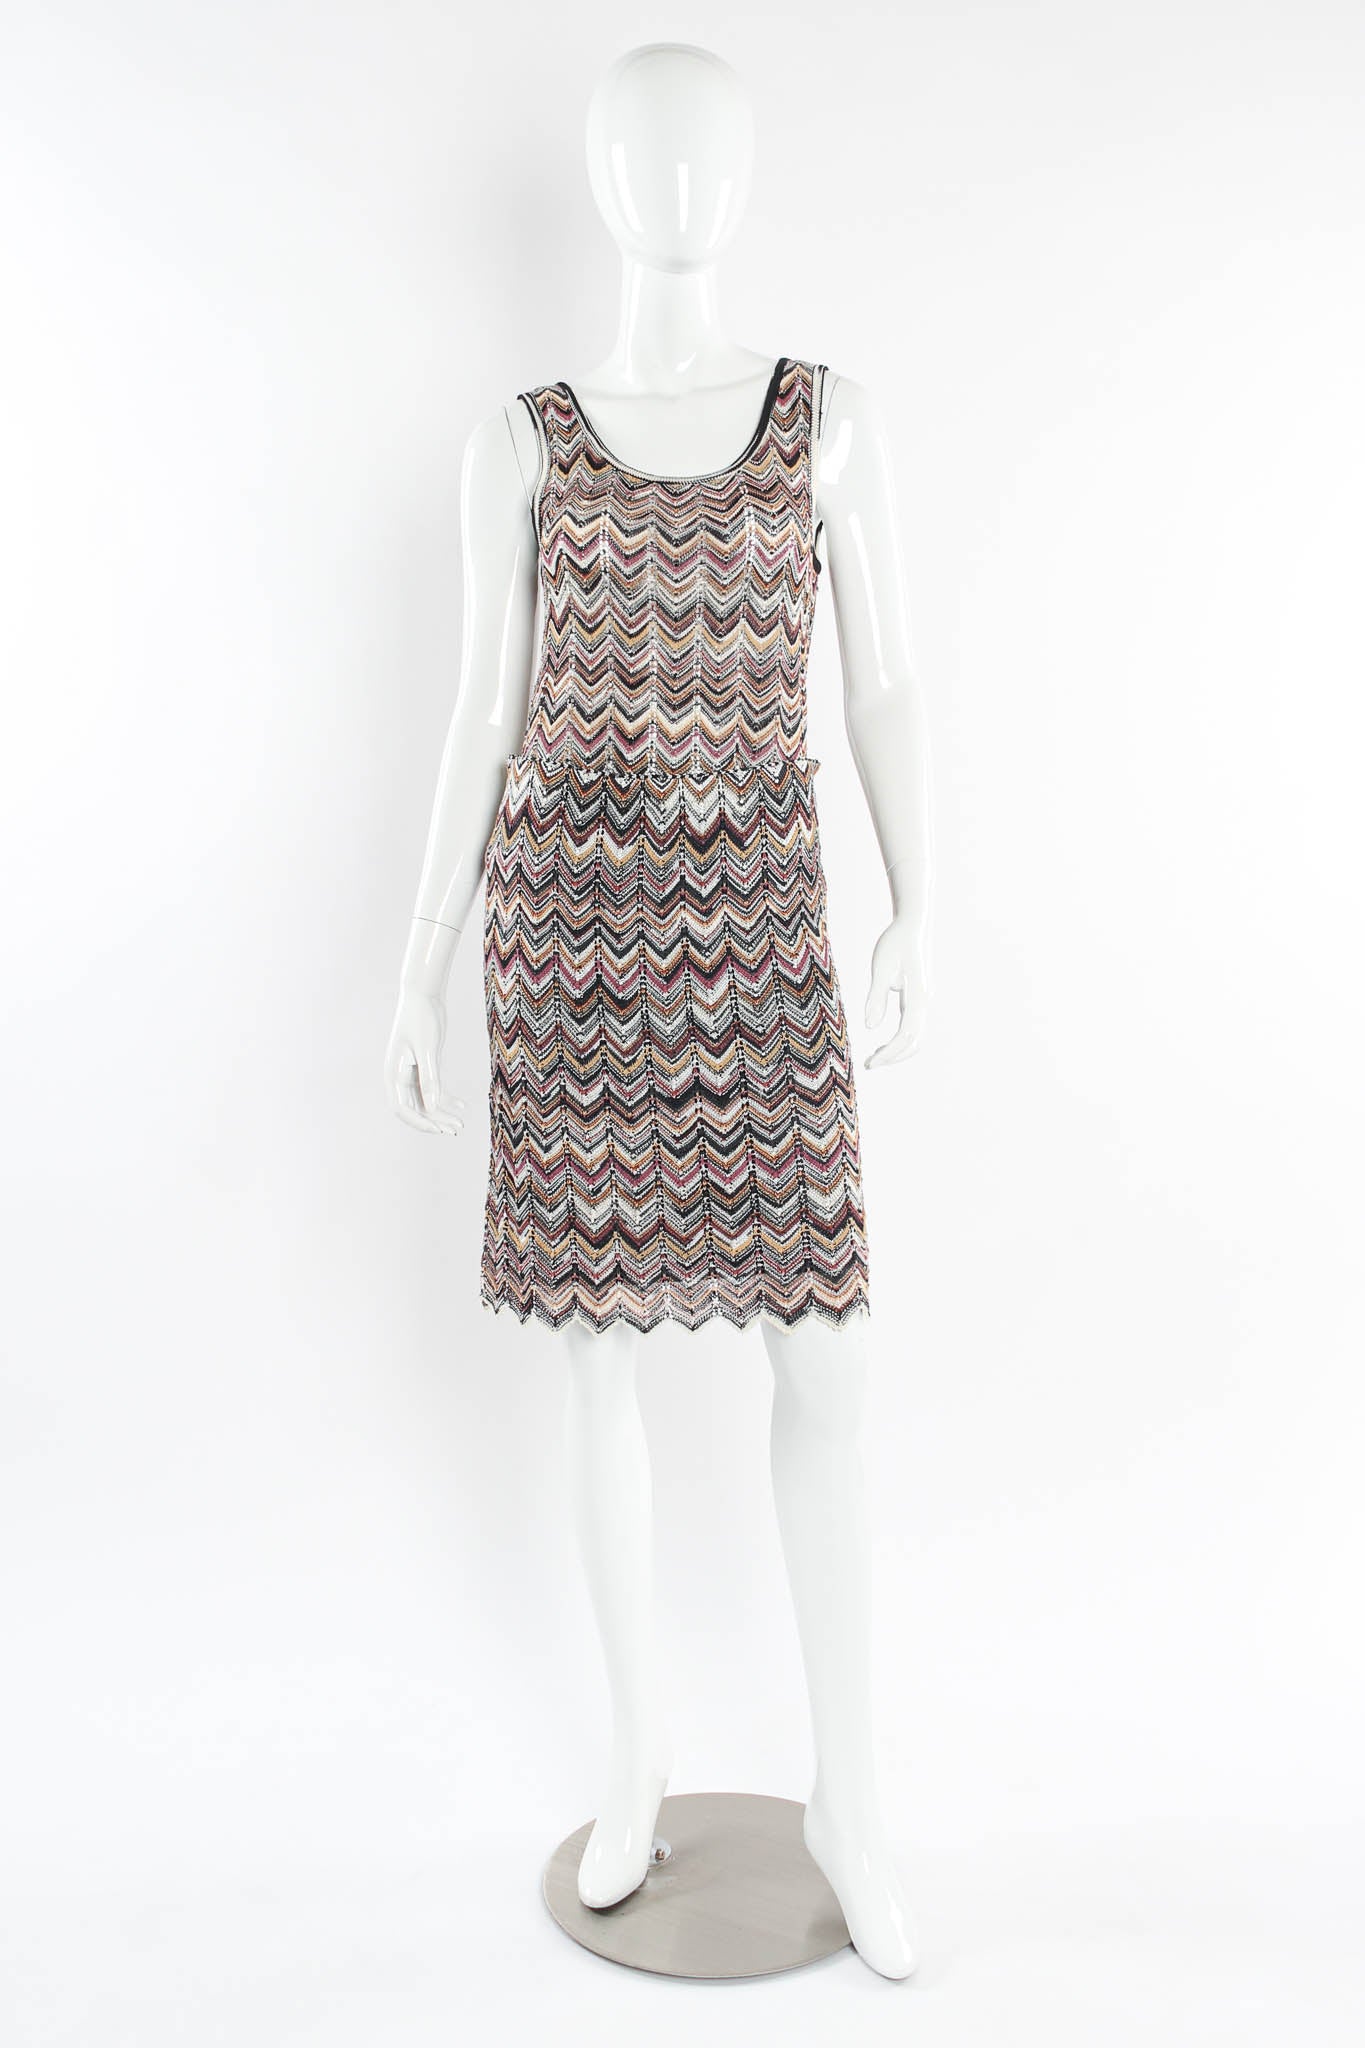 Vintage Missoni Chevron Stripe Top, & Skirt (4 Piece Set) mannequin front no cardigan@ Recess LA